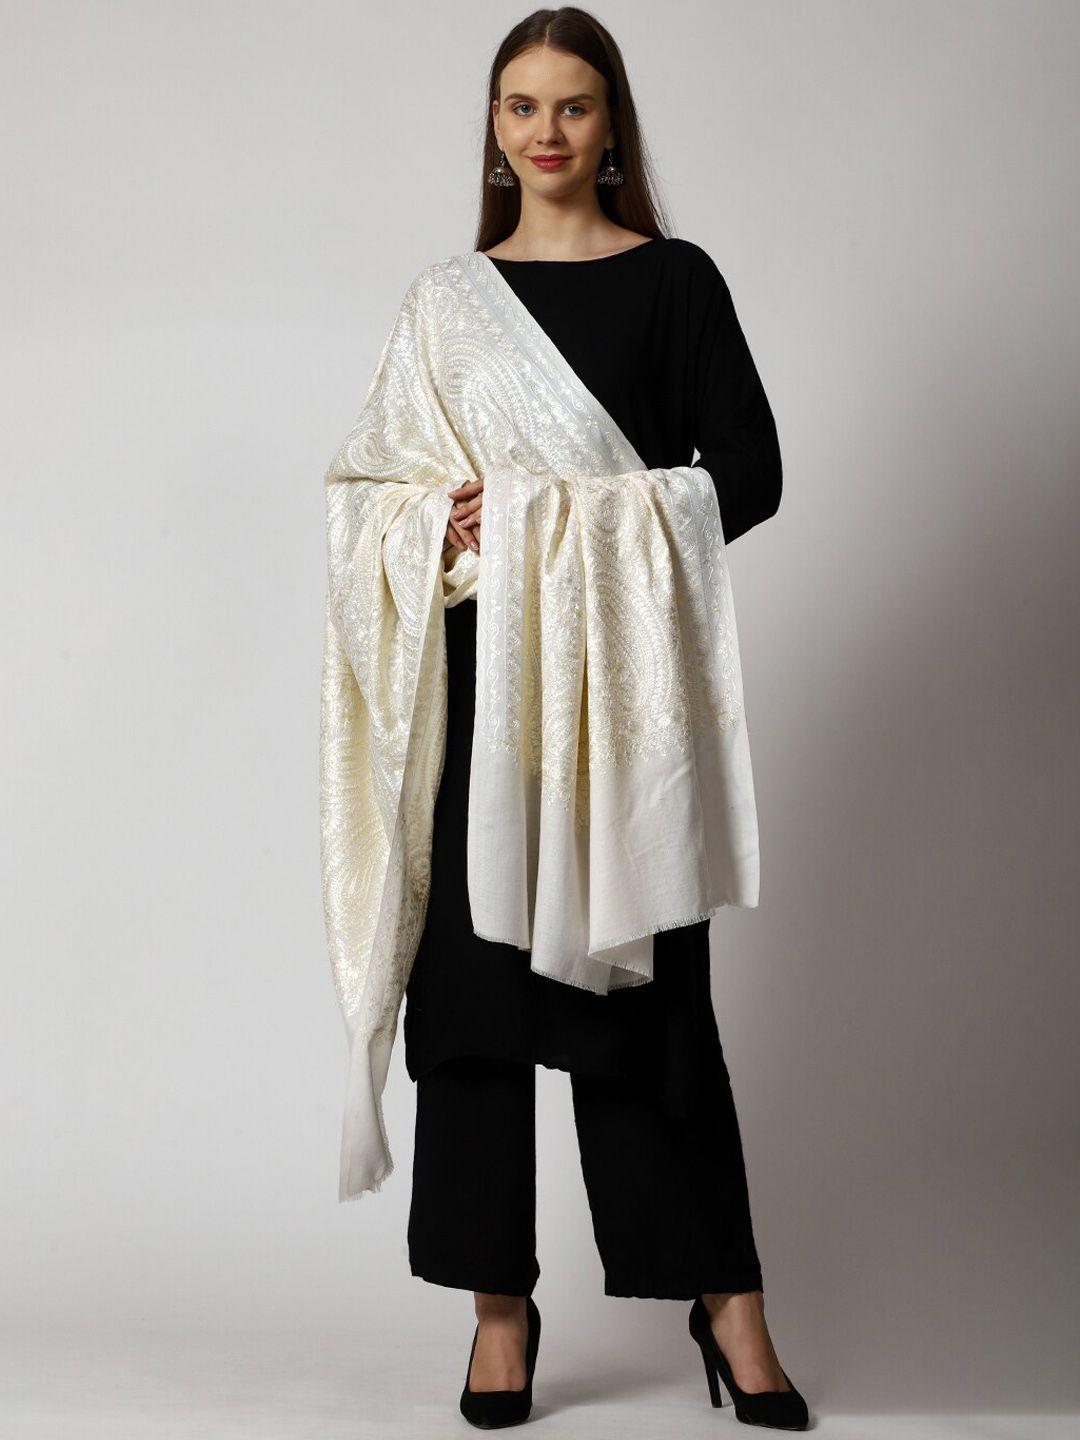 swi stylish aari work embroidered shawl